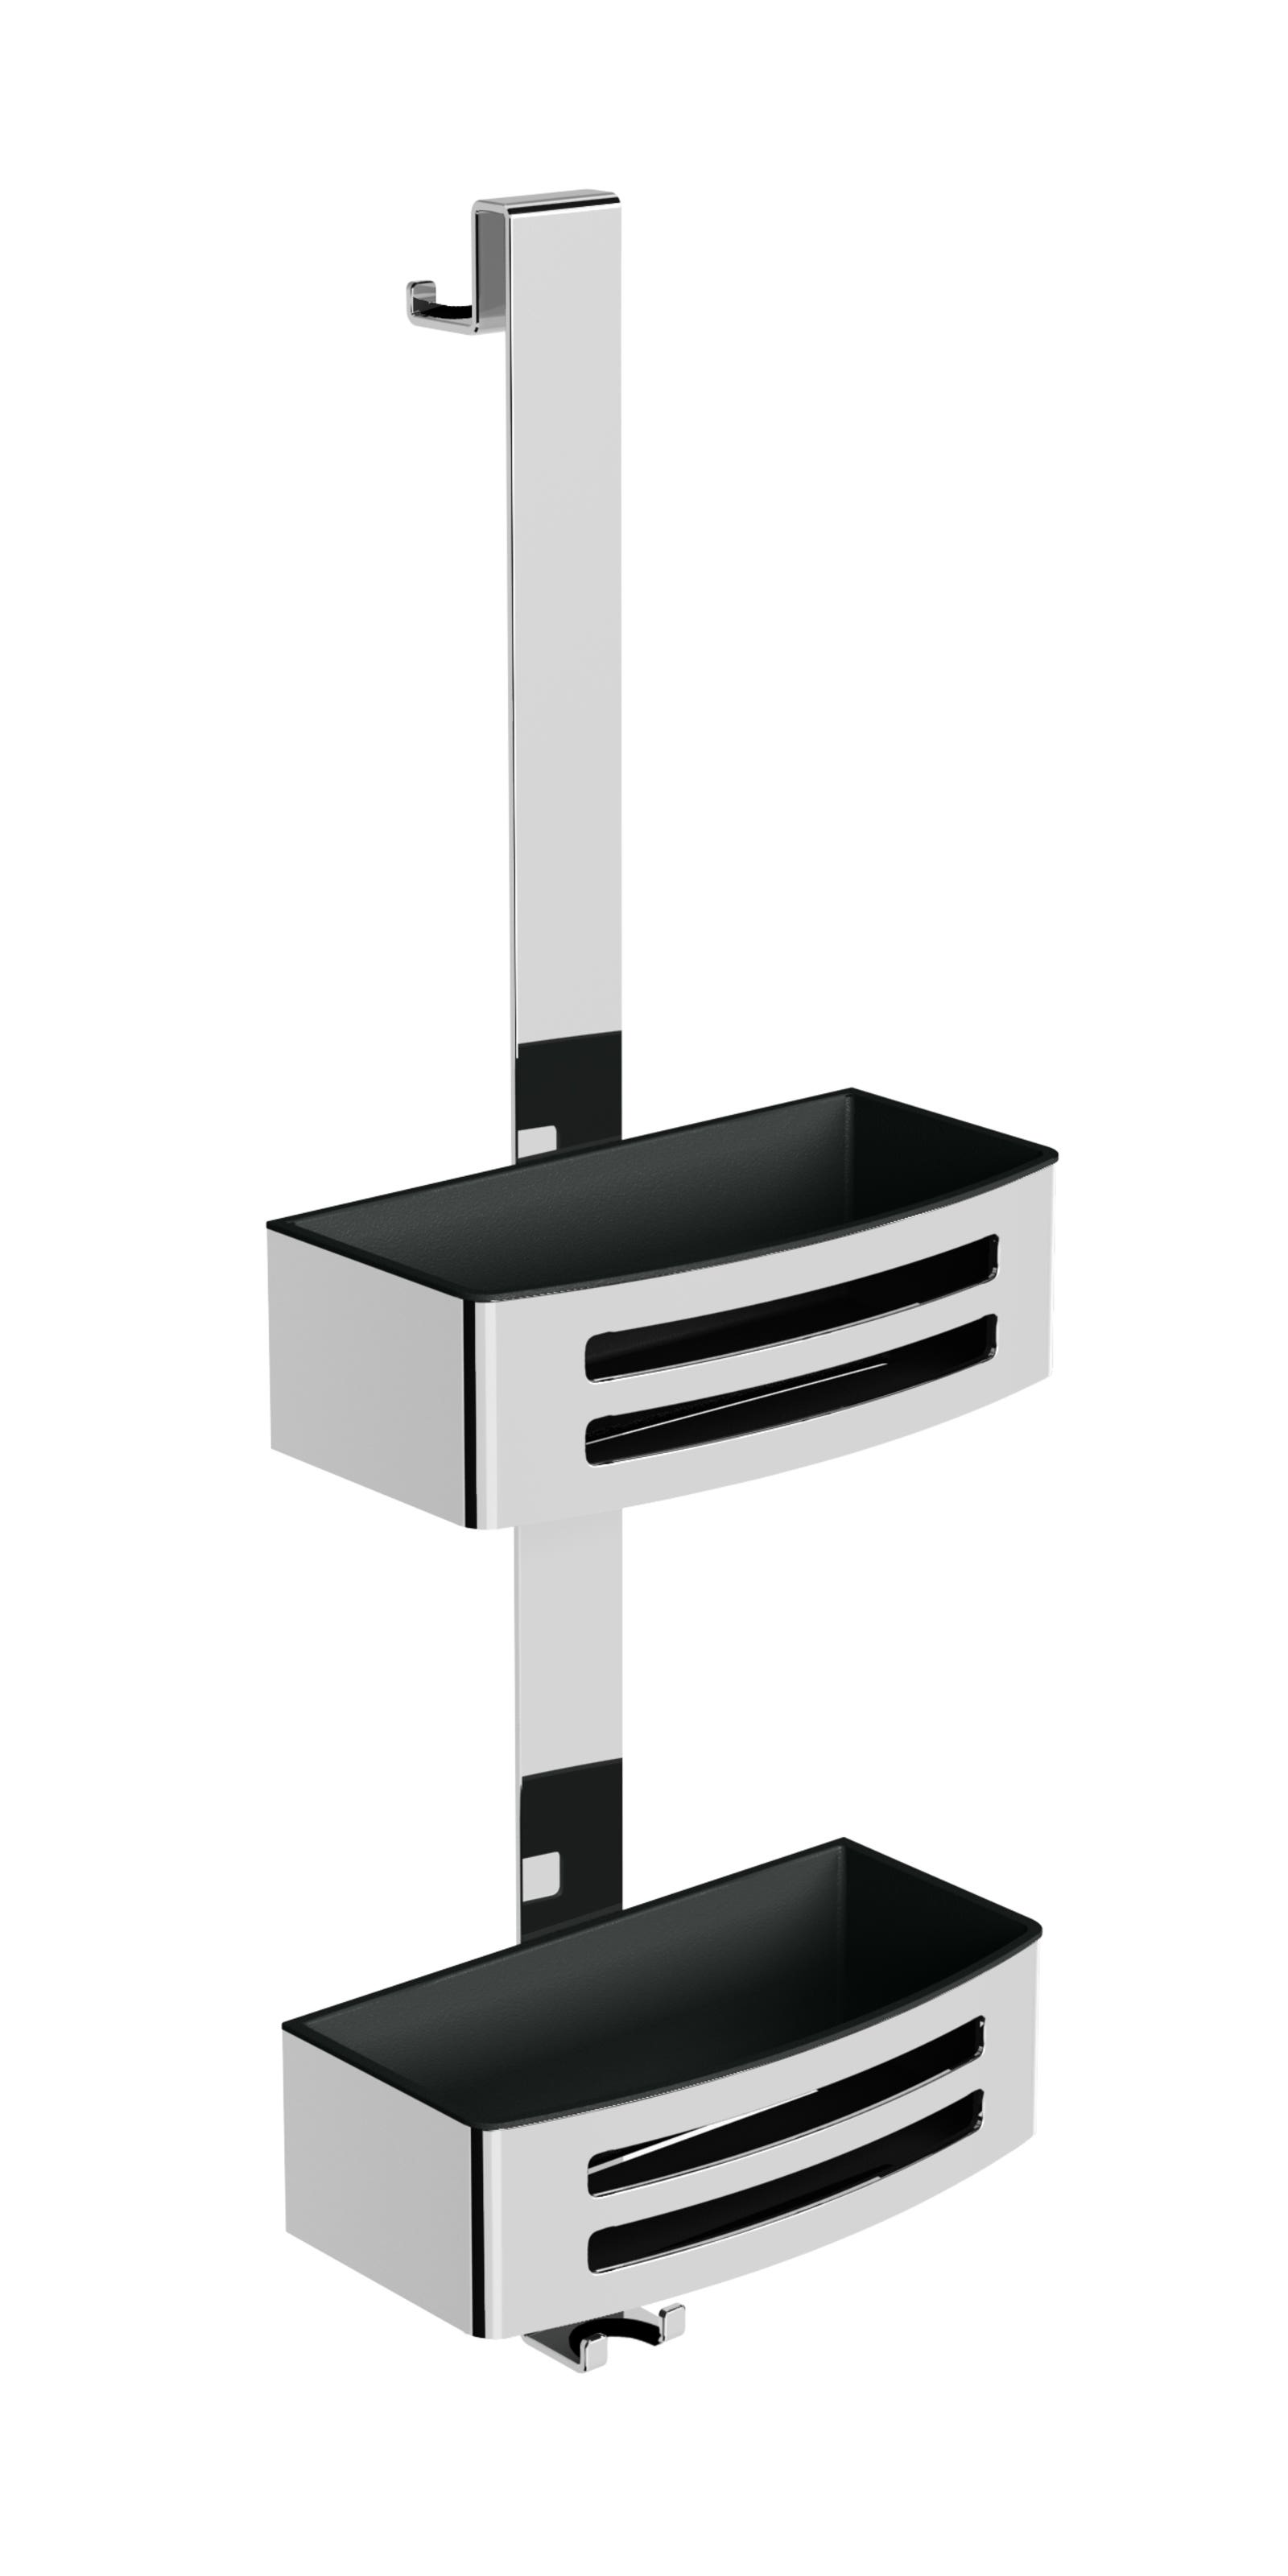 Dusch-Reling mit zwei Körben individual 3.0 schwarz-matt-V3EDKSW-